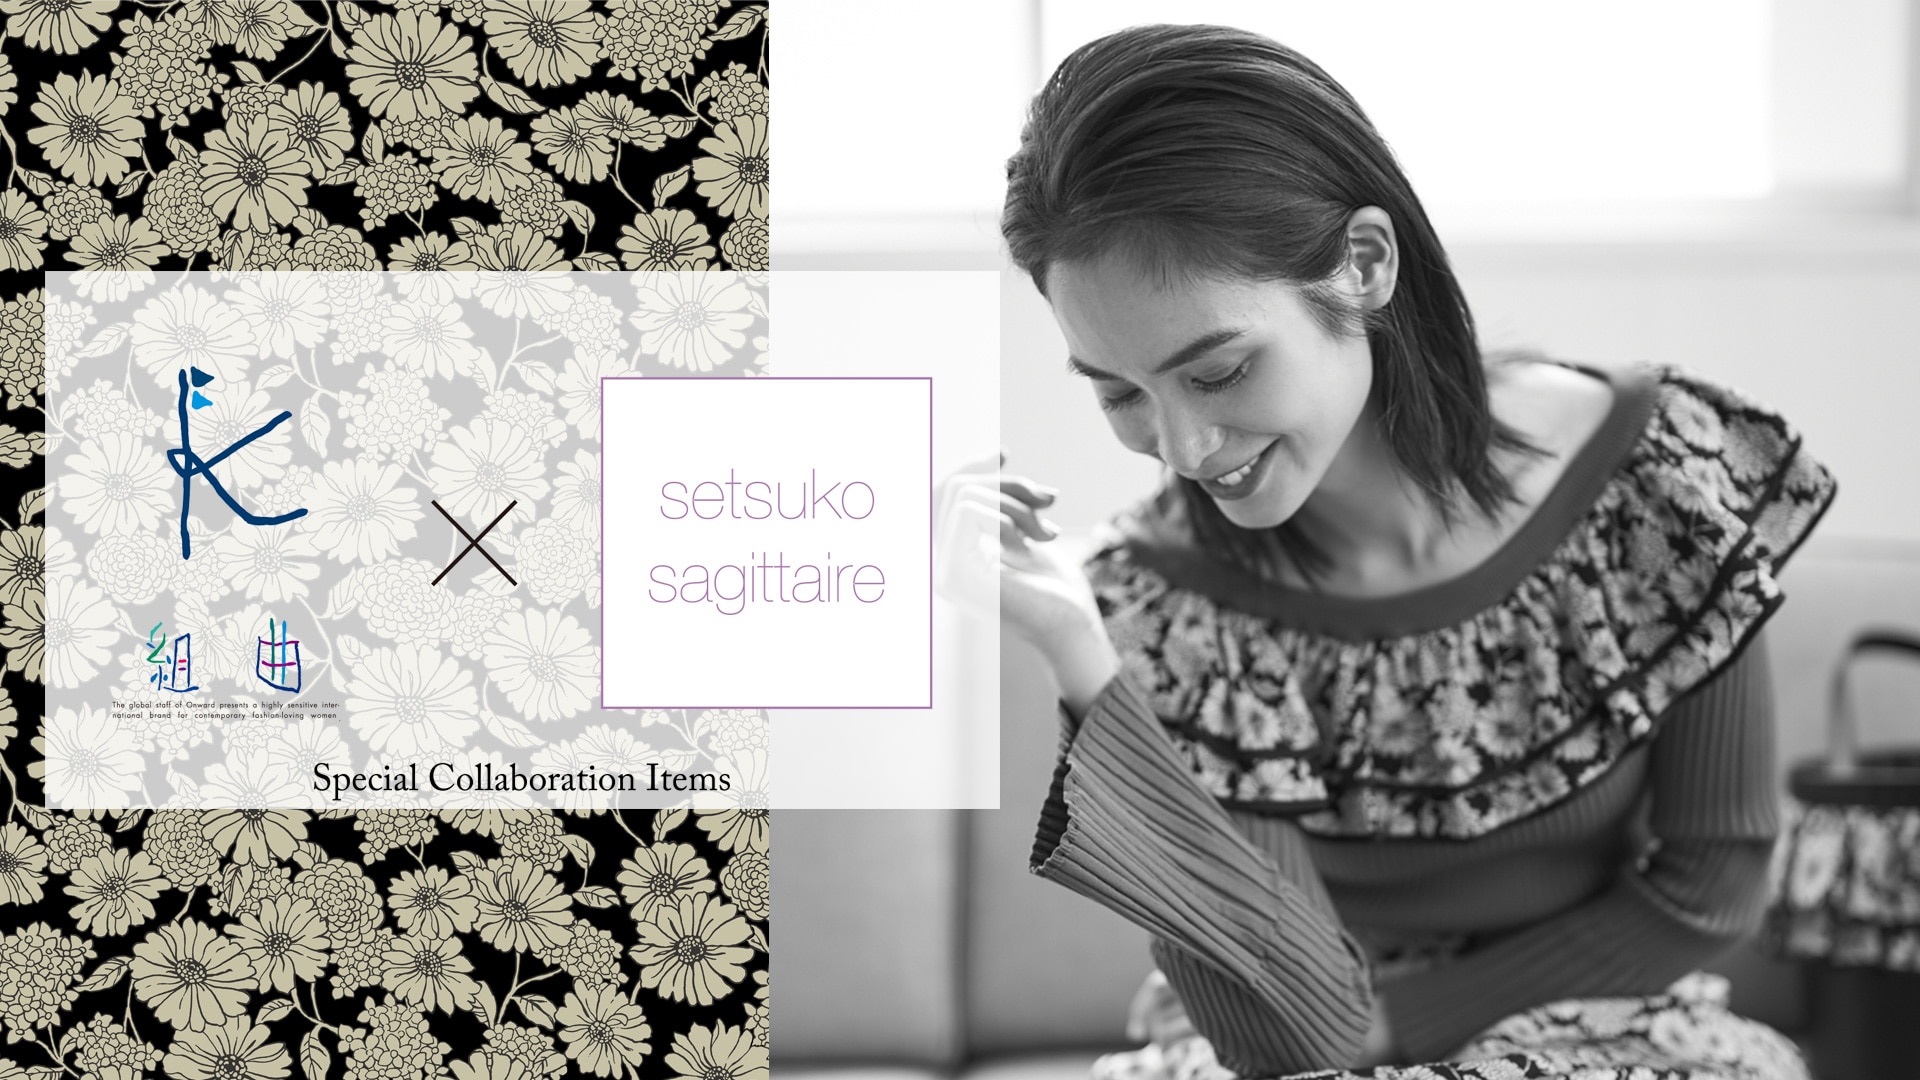 組曲×setsuko sagittaire】Special Collaboration Items| ファッション